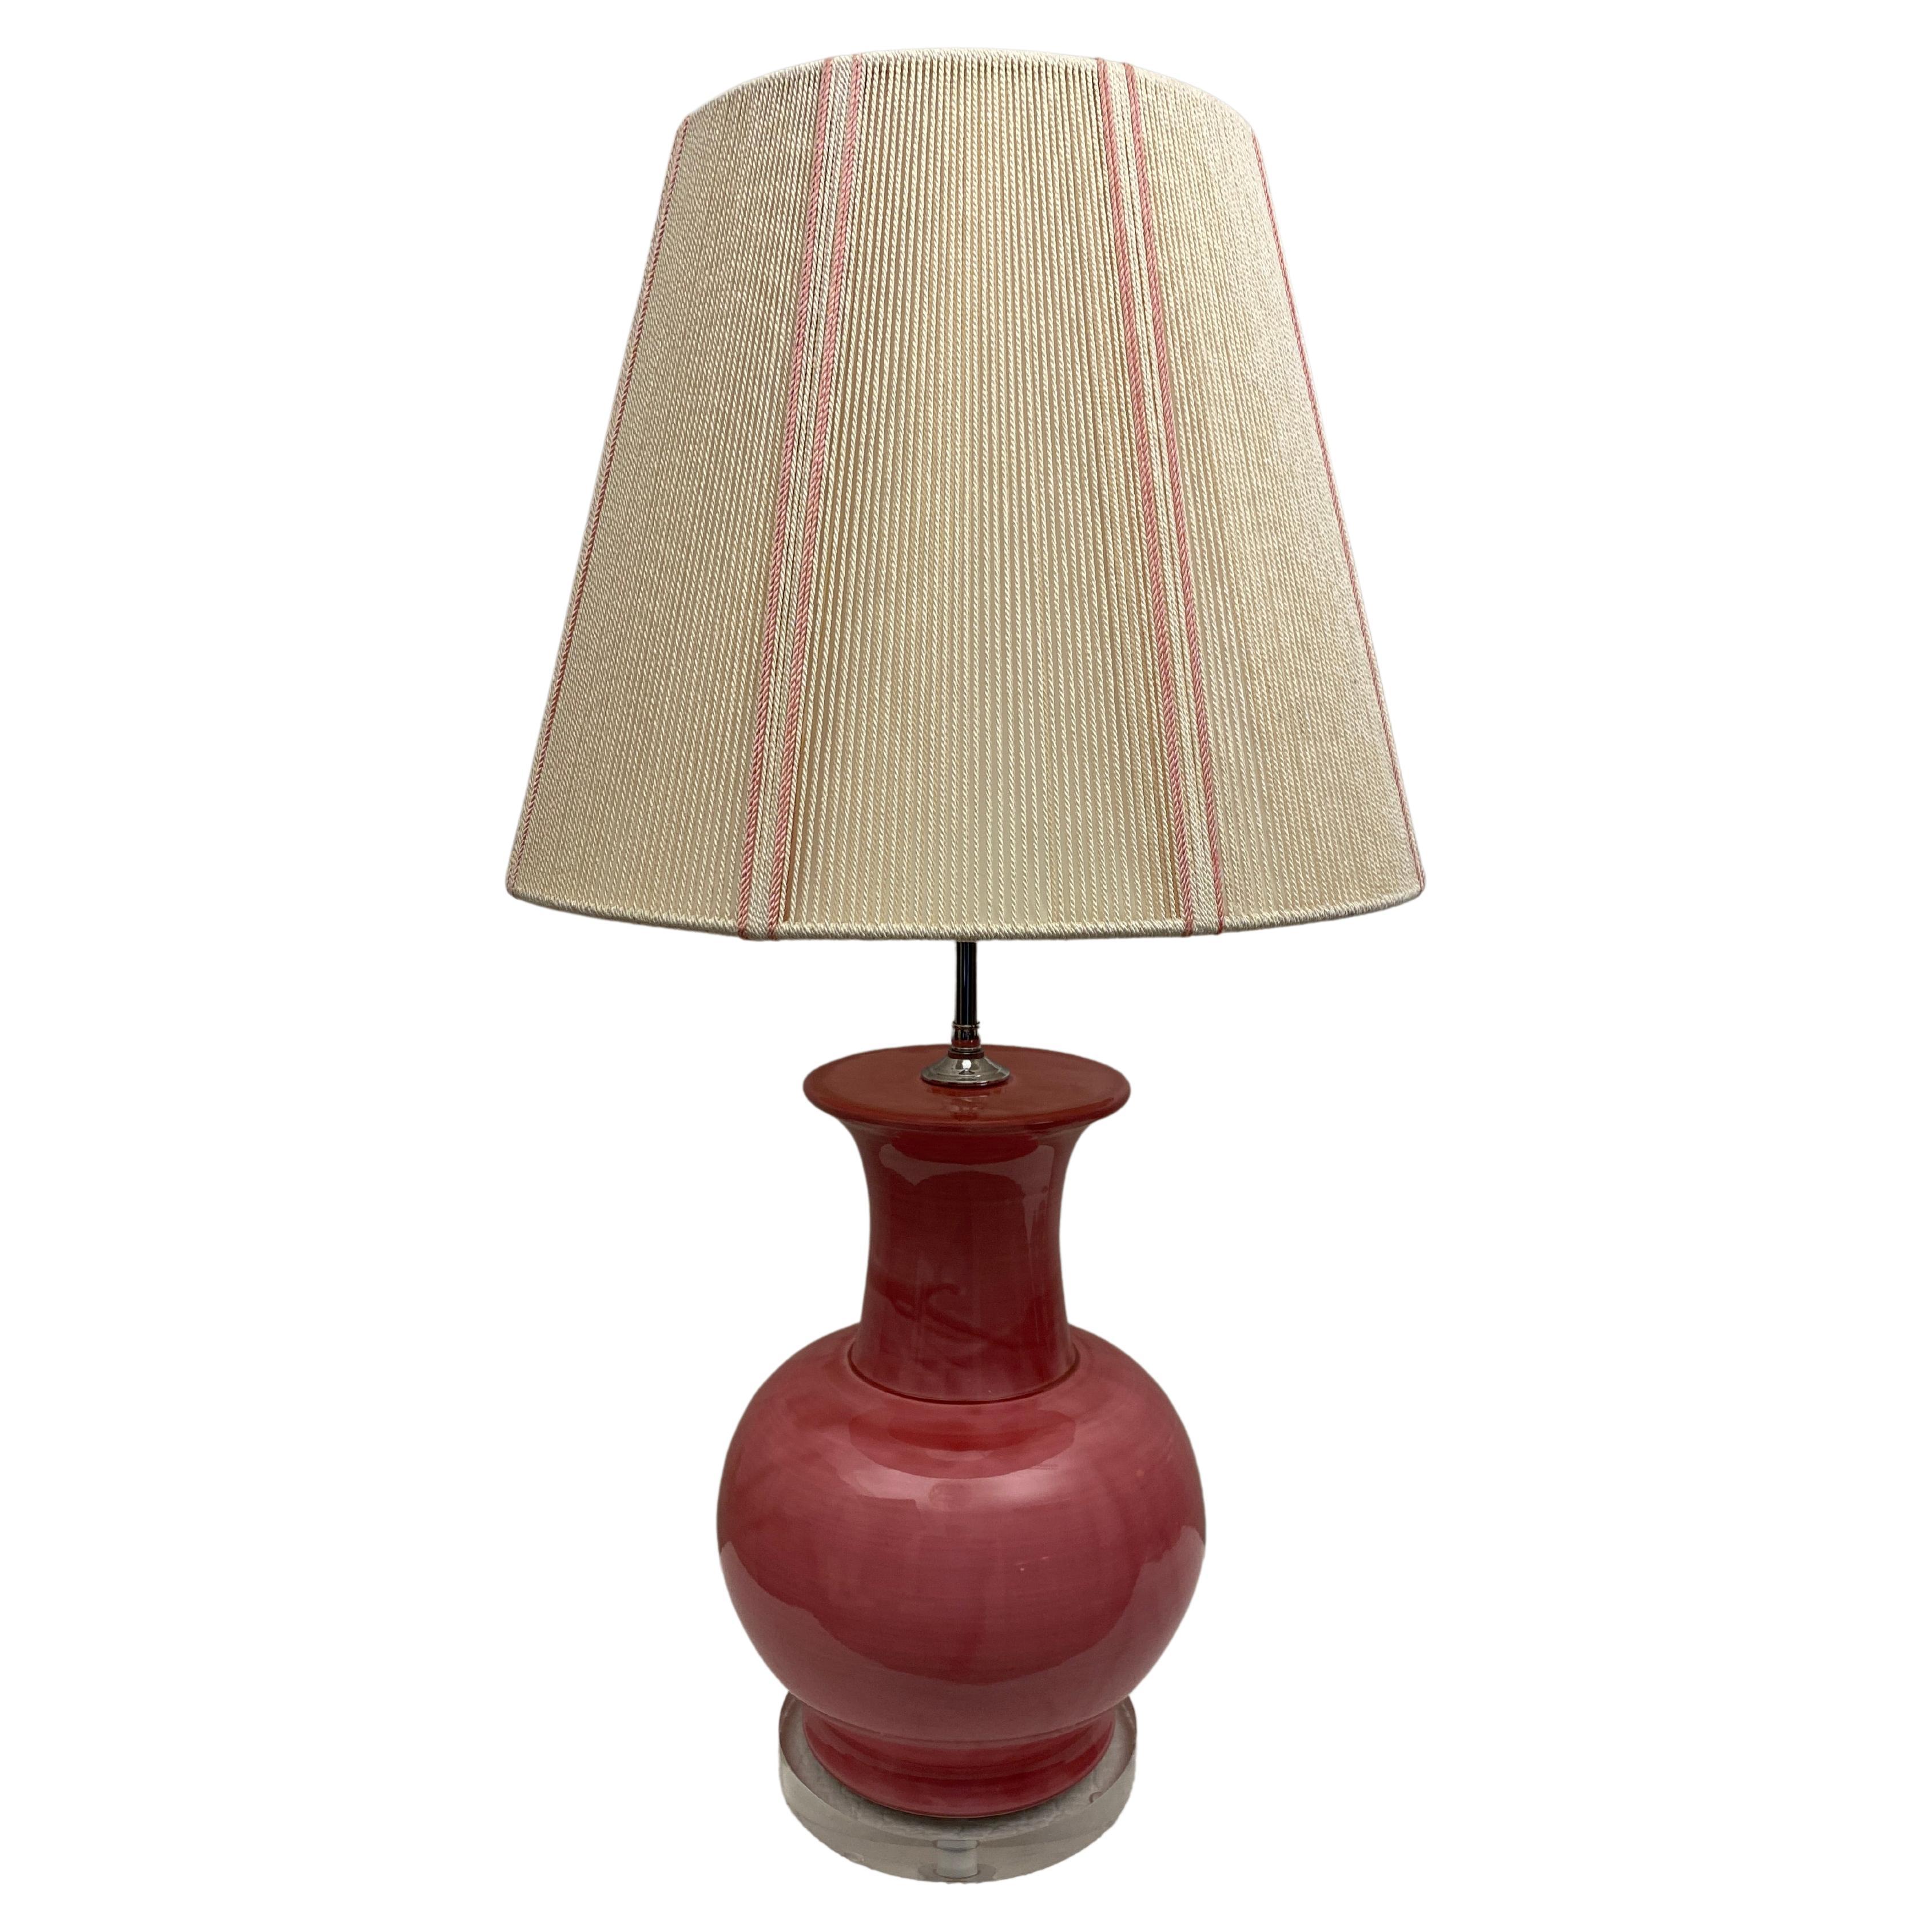 Lampe de table en céramique émaillée rose et en lucite, vers les années 1980. 
Nouvellement recâblé.

Cette lampe de table en céramique émaillée rose pâle avec une base et un final en lucite est en parfait état vintage. La base en lucite rend la